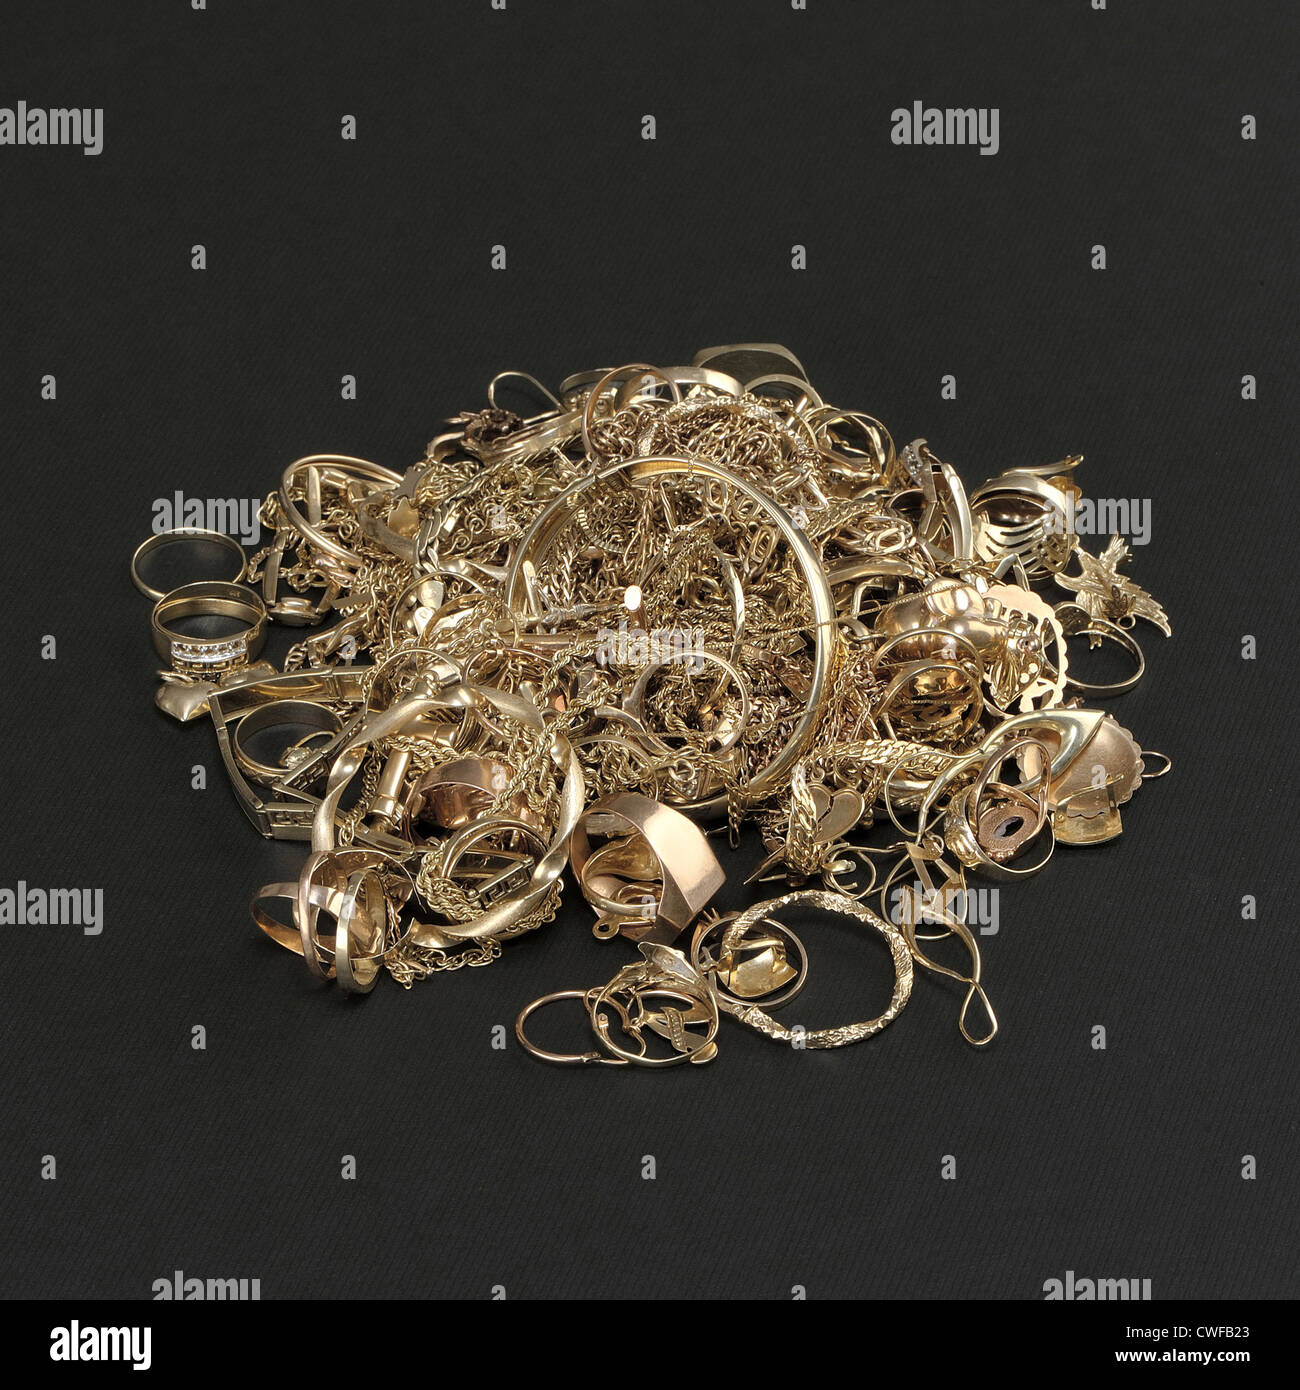 Beaucoup de bijoux en or sur fond sombre Photo Stock - Alamy